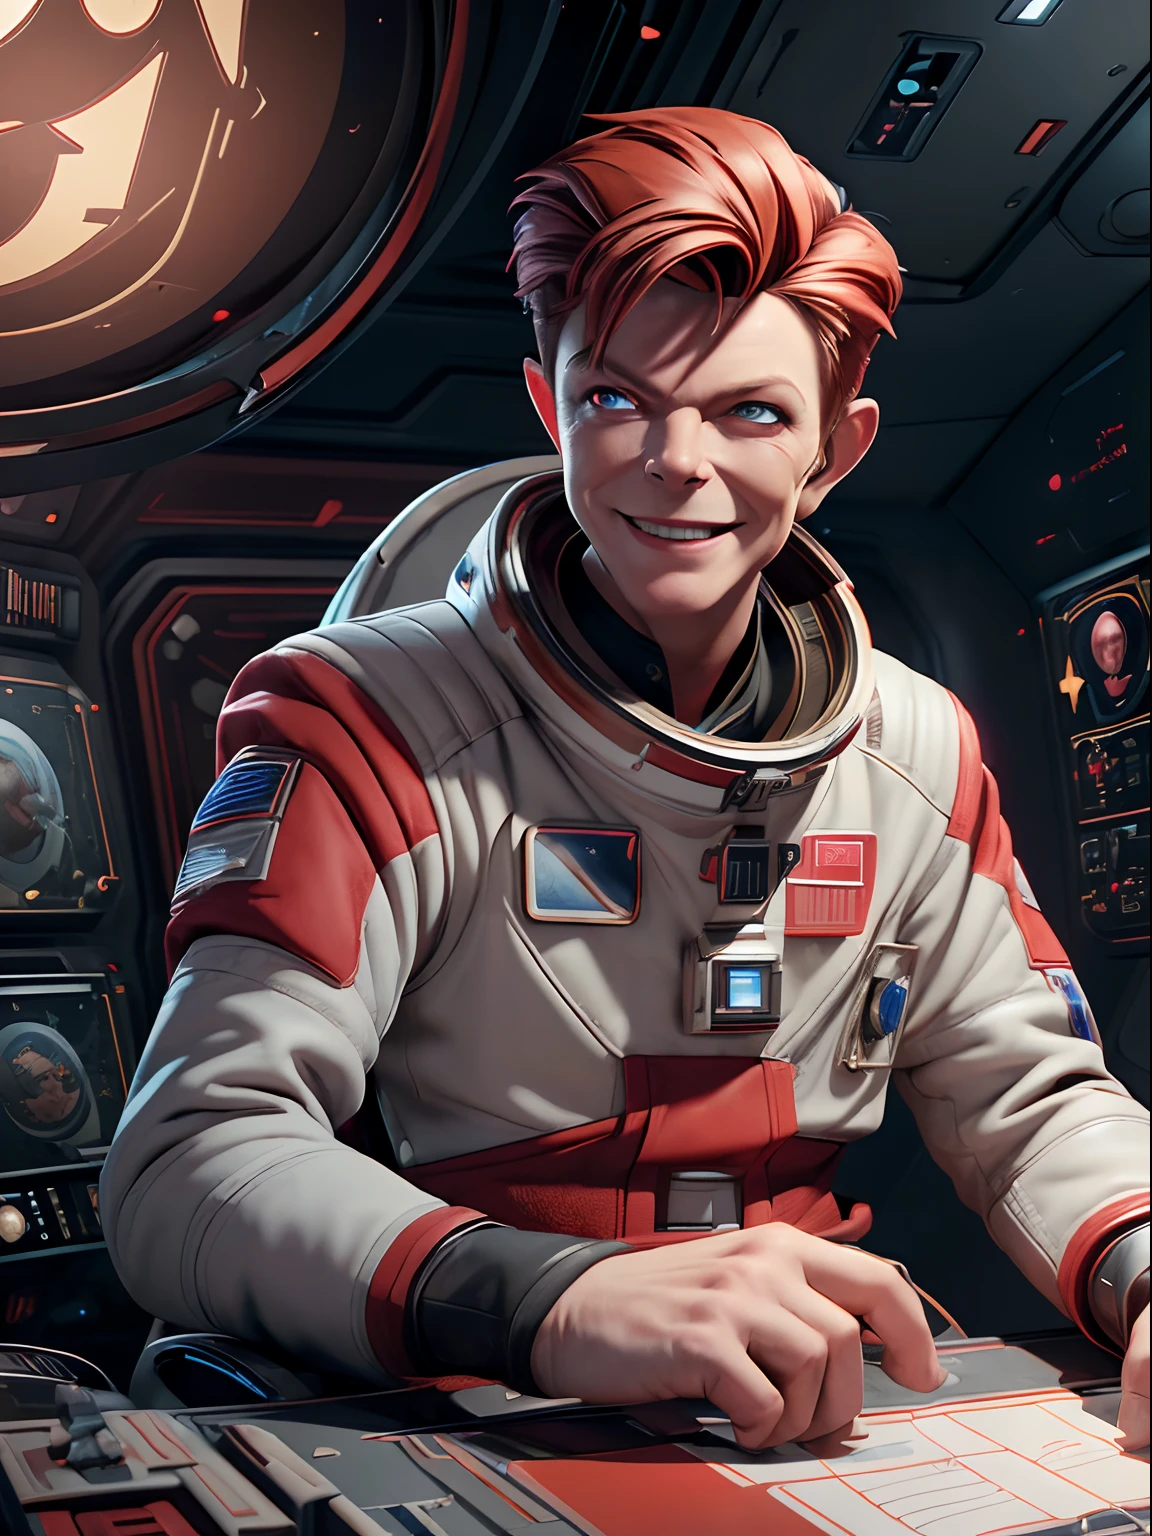 (obra maestra, mejor calidad, ilustración, Motor irreal 5, arte oficial:1.3), Esquema de color rojo intenso, una imagen de (David Bowie) como sonriente Mayor Tom, Un tecnocrático, omnívoro, iridescent, Comandante astronauta, (Sentado en una sala de control de Starbase:1.2),cara detallada, Detalles increíblemente intrincados, absurdos, 8K